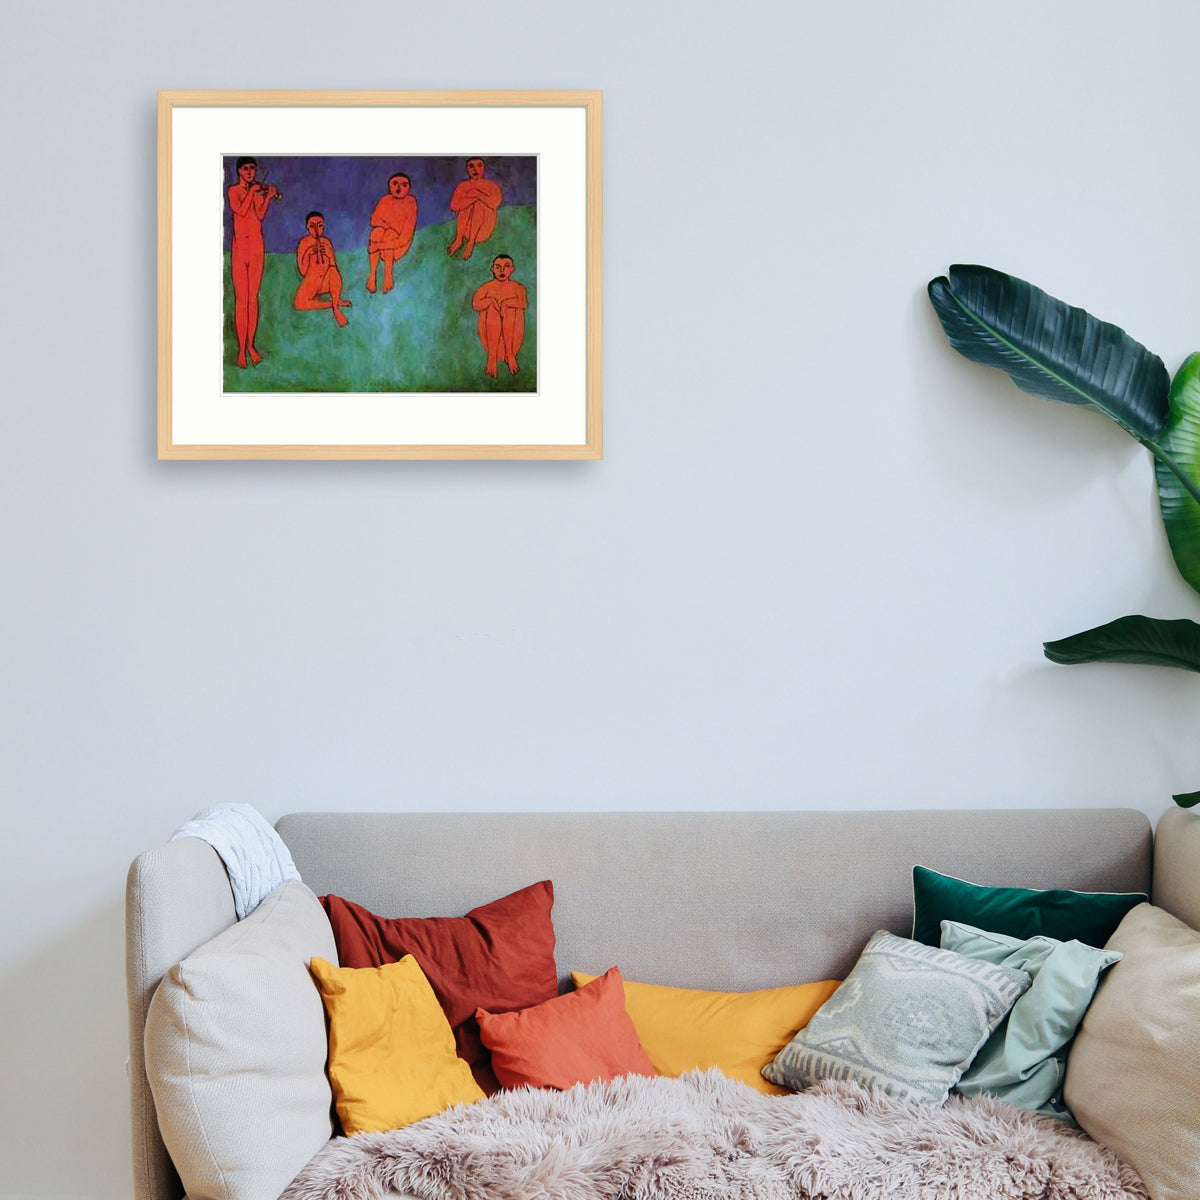 Matisse - La musique Le Cadre Décoration intérieure Tableaux cadre bois affiche poster oeuvre d'art rapport qualité prix pas cher peintre célèbre